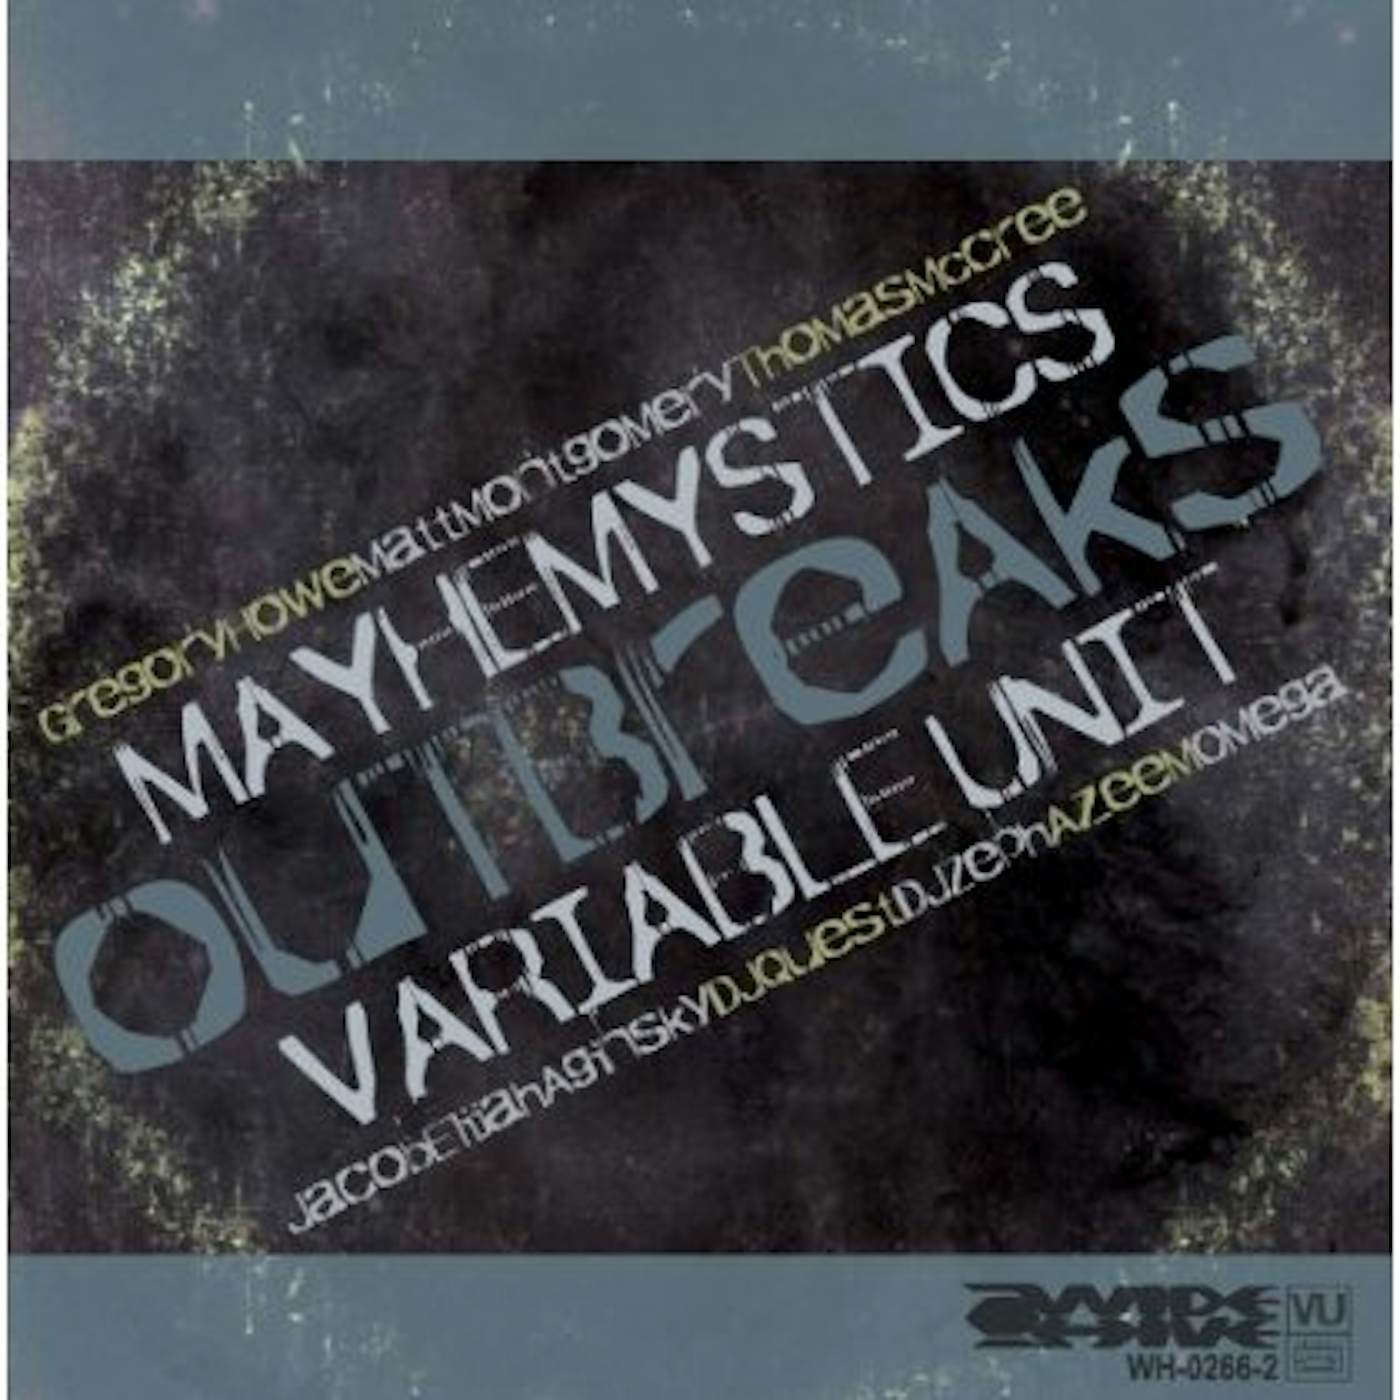 Variable Unit Mayhemystics Outbreaks Vinyl Record